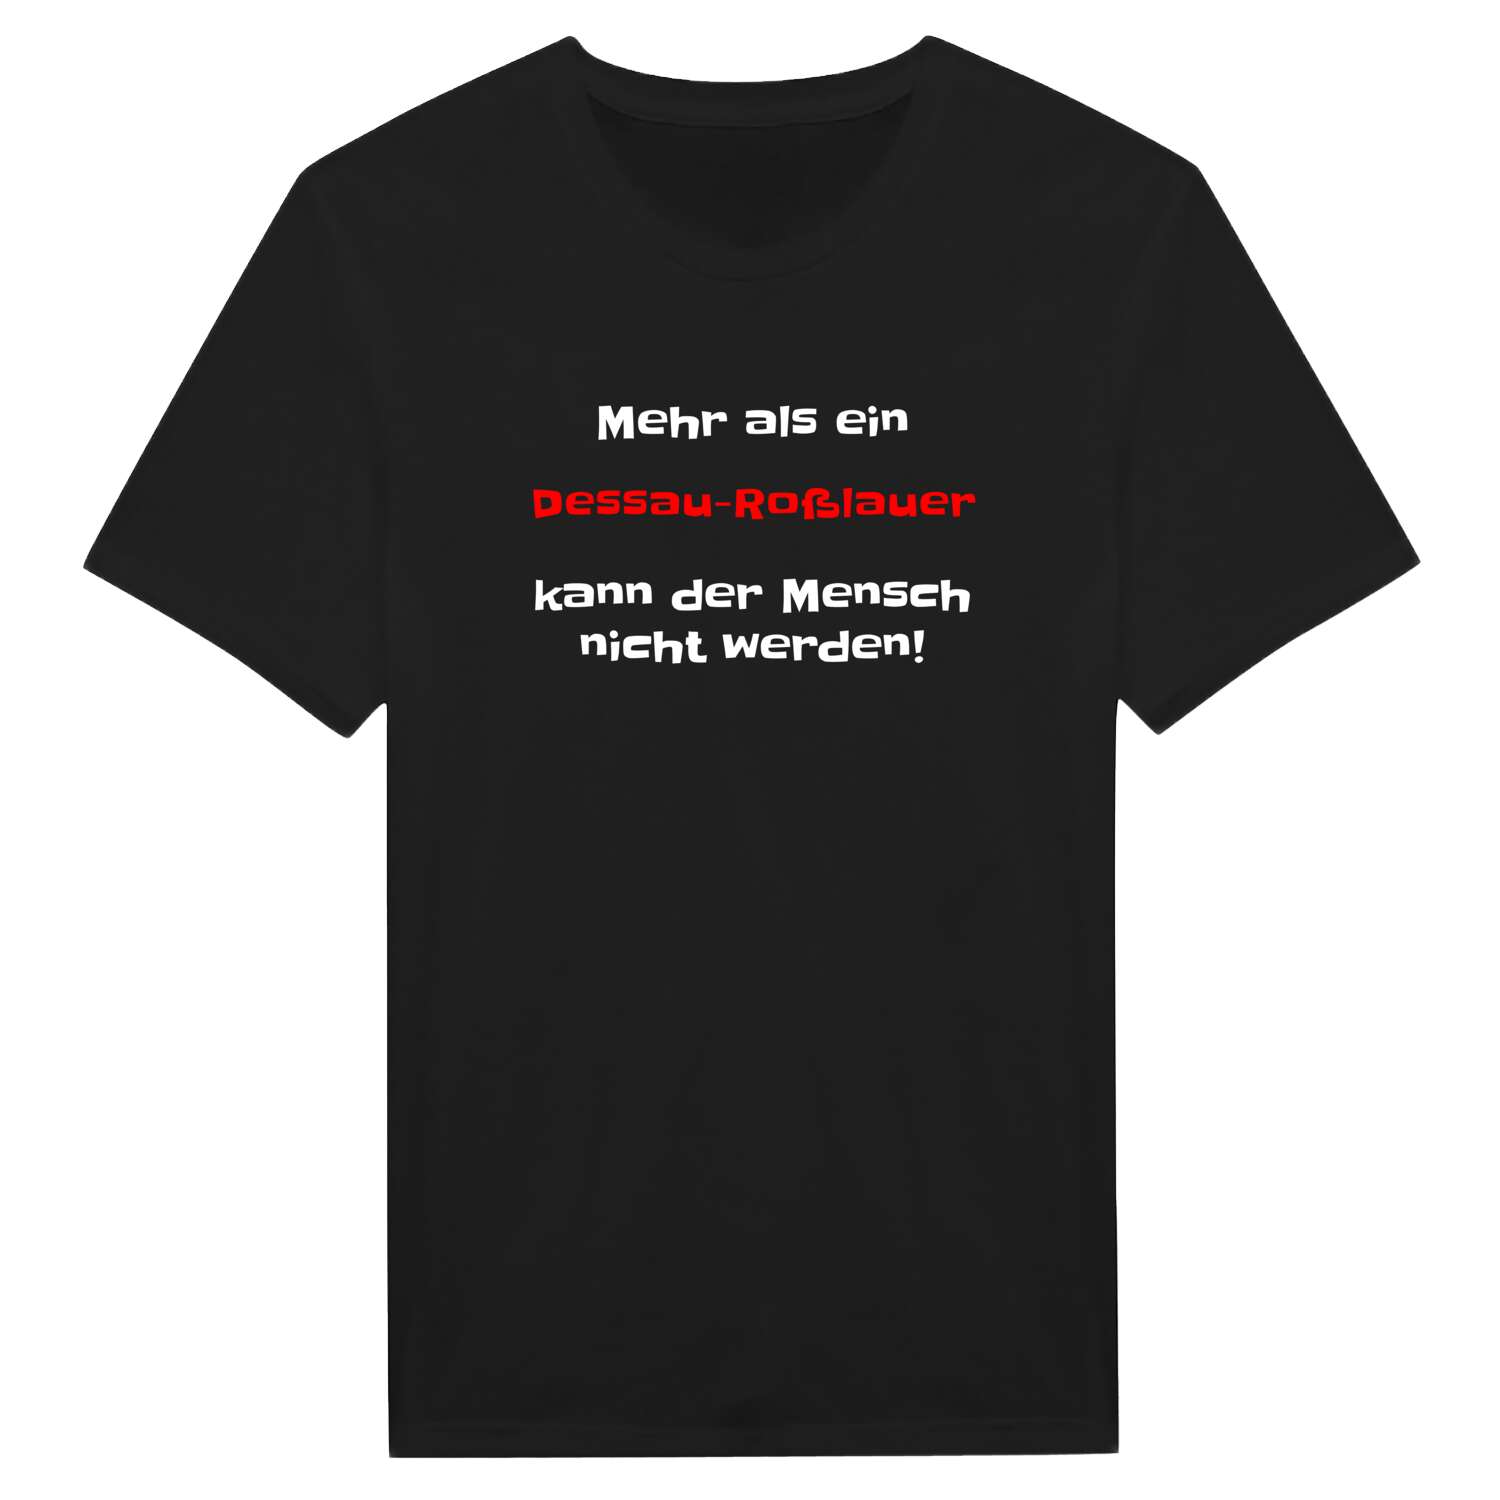 Dessau-Roßlau T-Shirt »Mehr als ein«